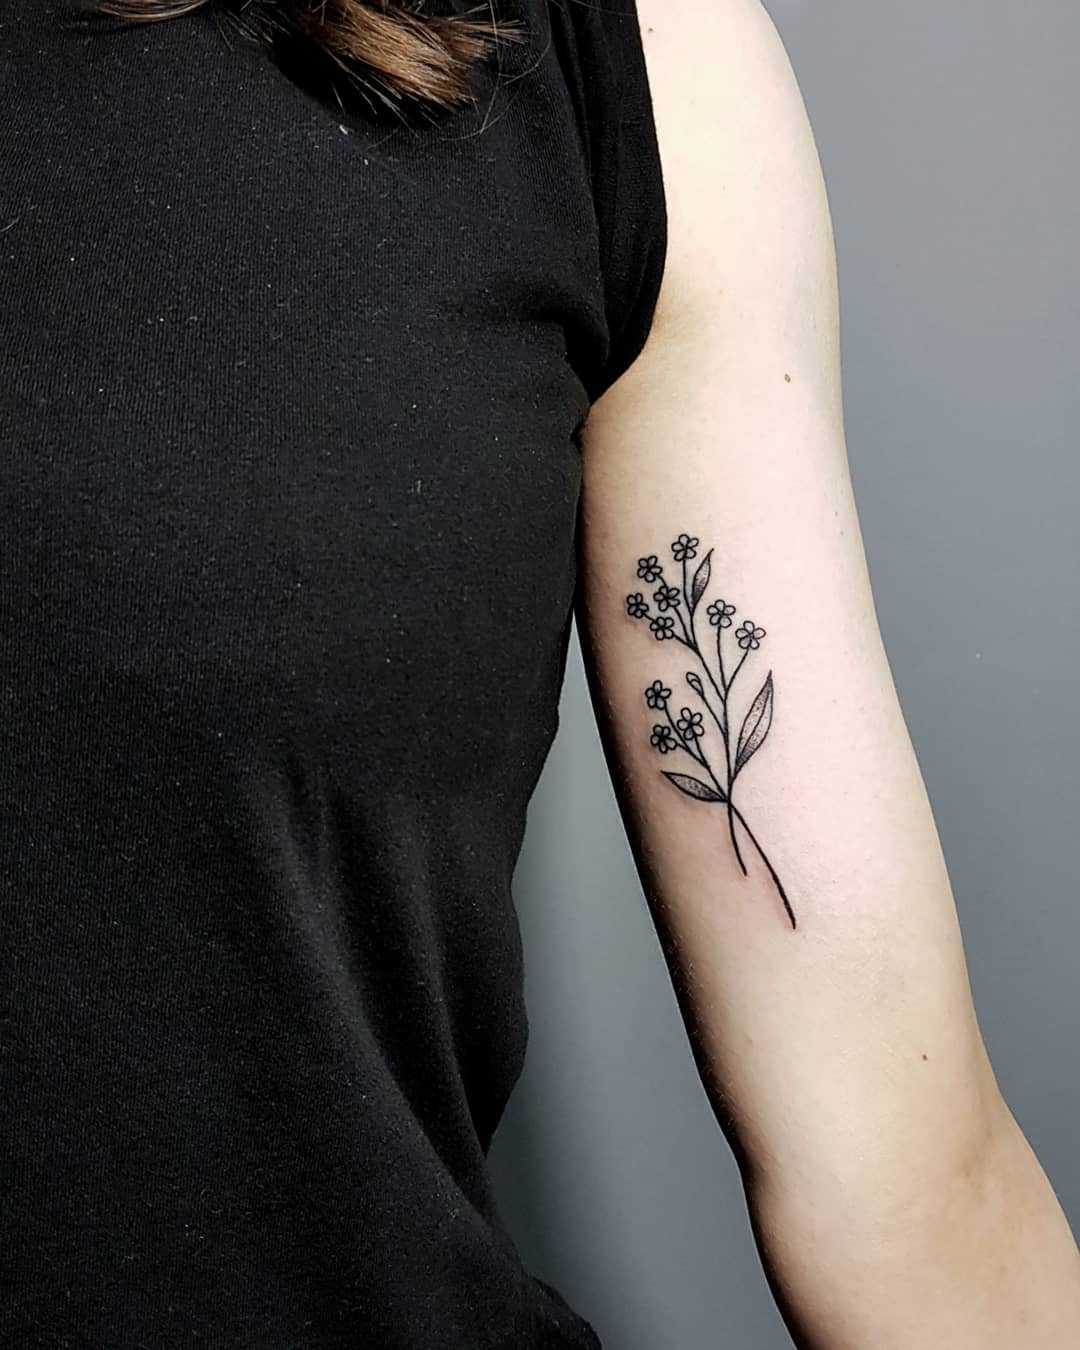 Minimalist forget-me-not tattoo - Tattoogrid.net